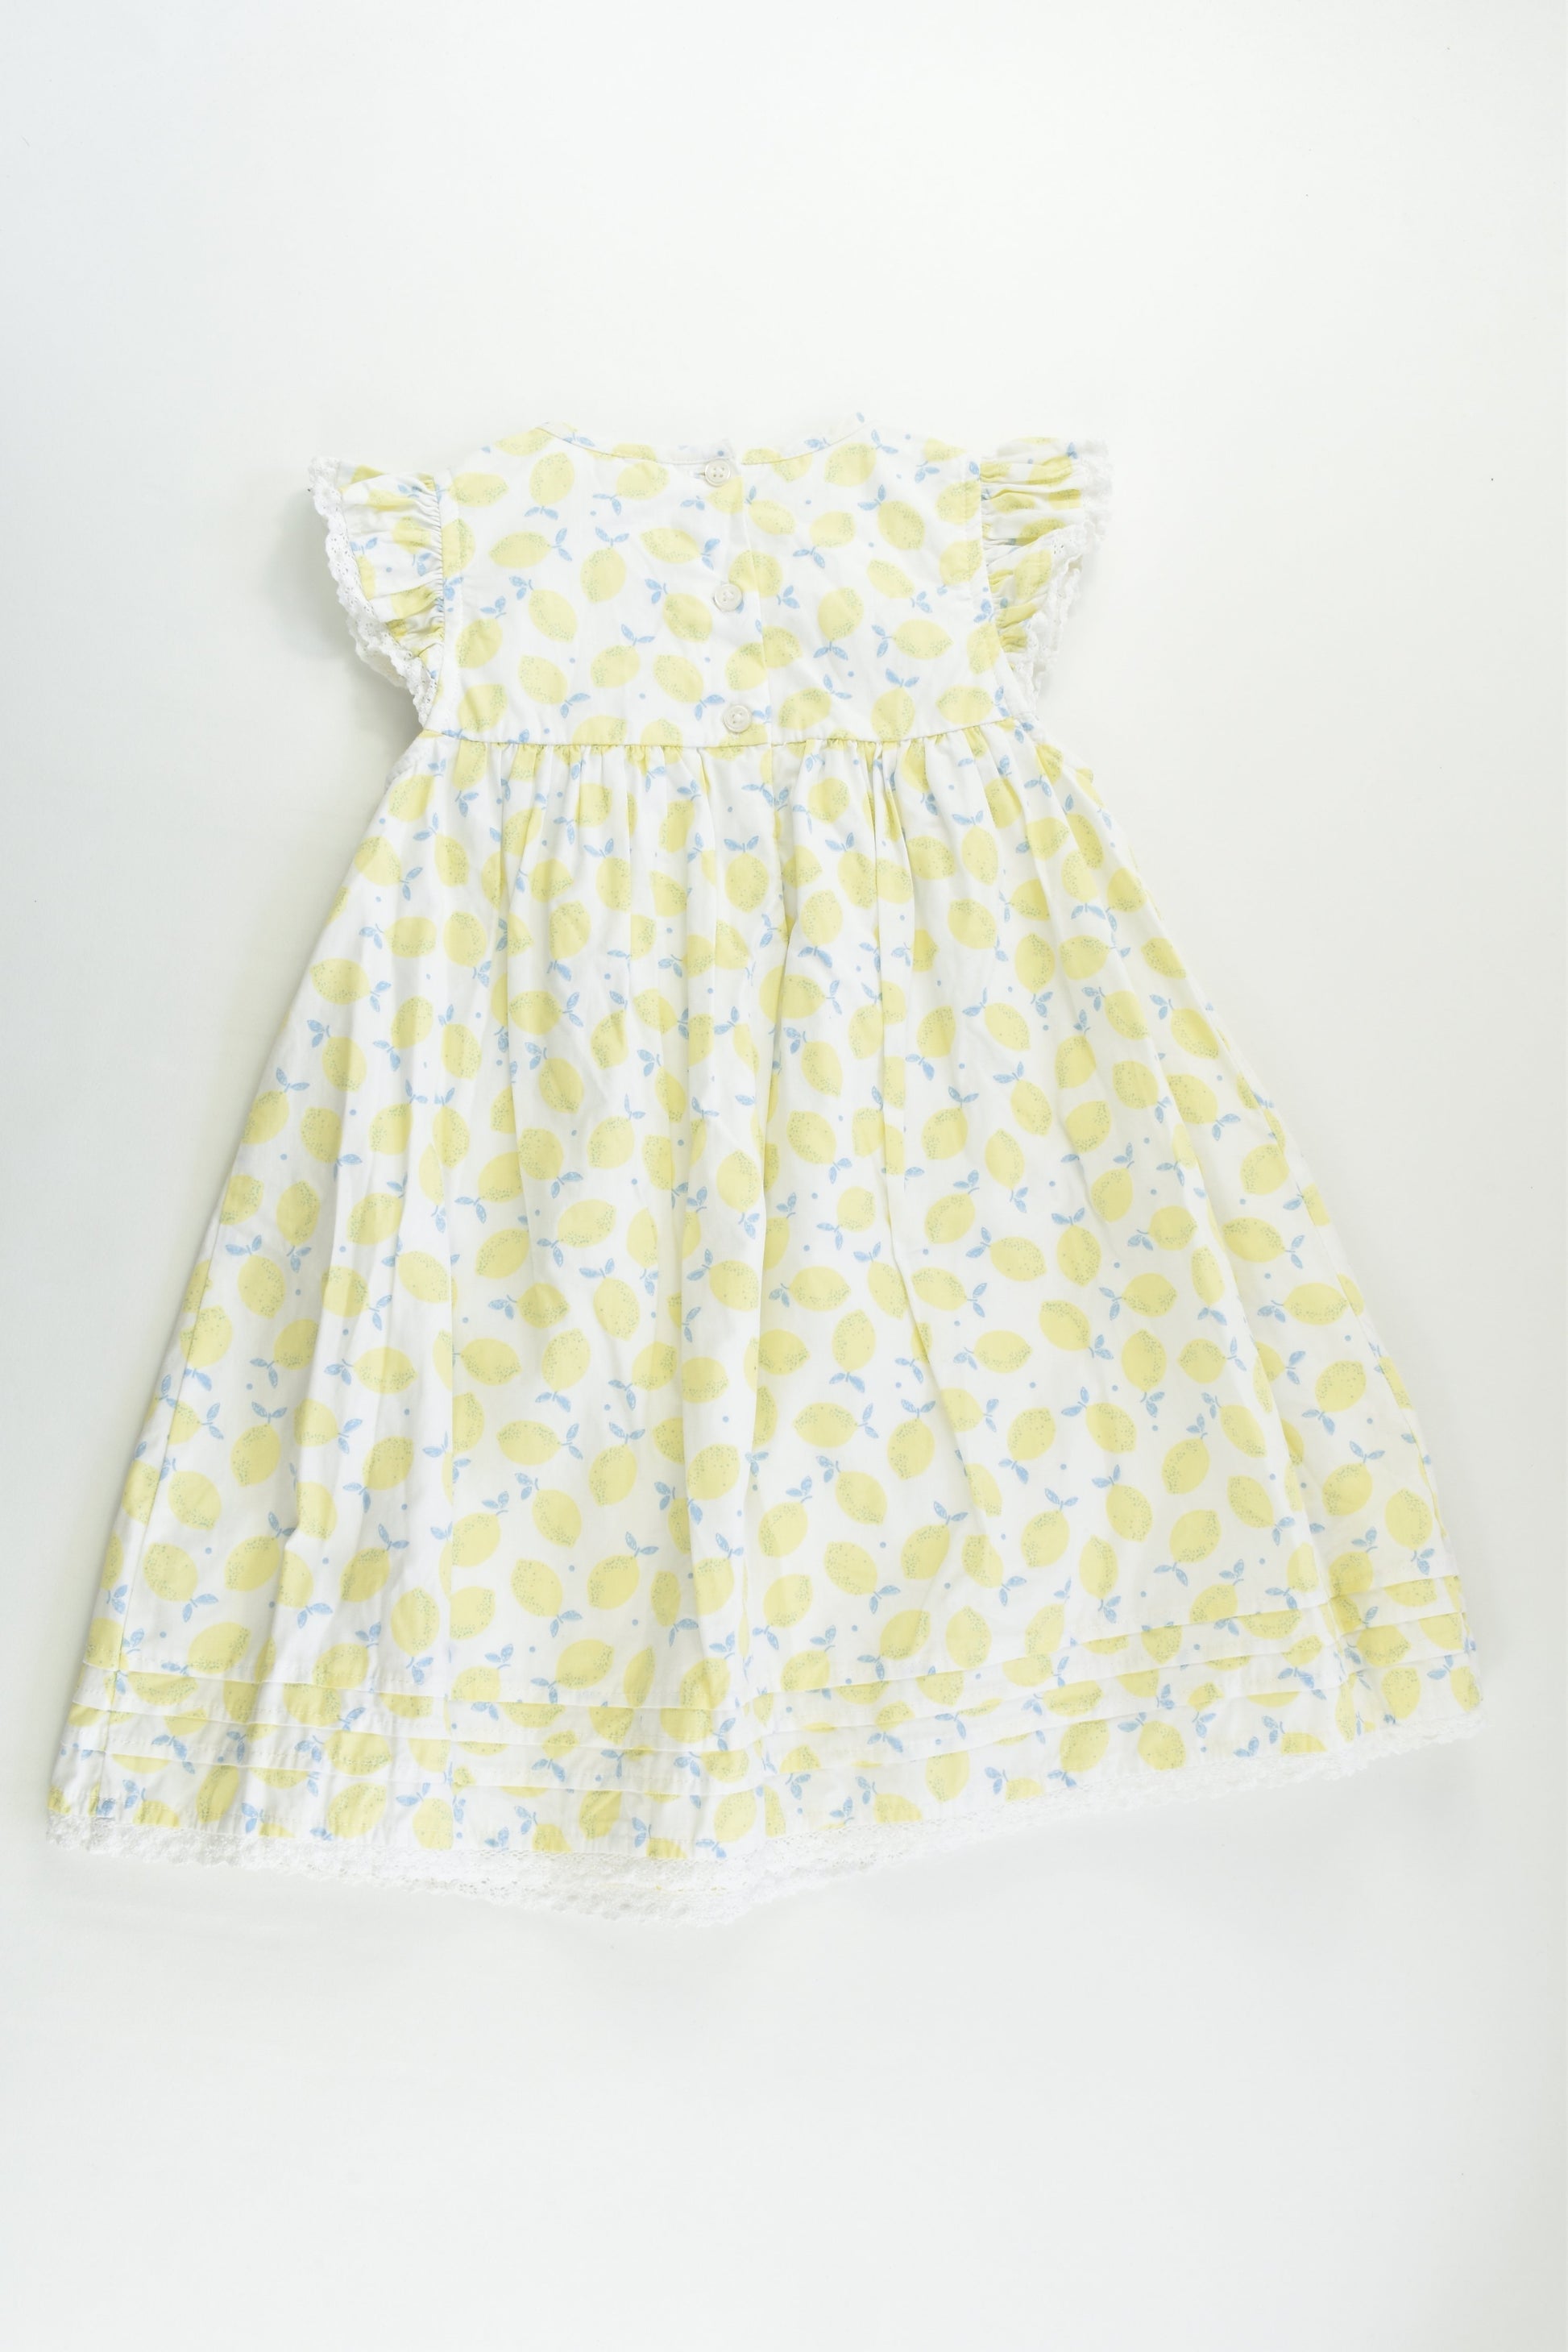 M&Co Size 2-3 (98 cm) Lined Smocked Lemon Dress